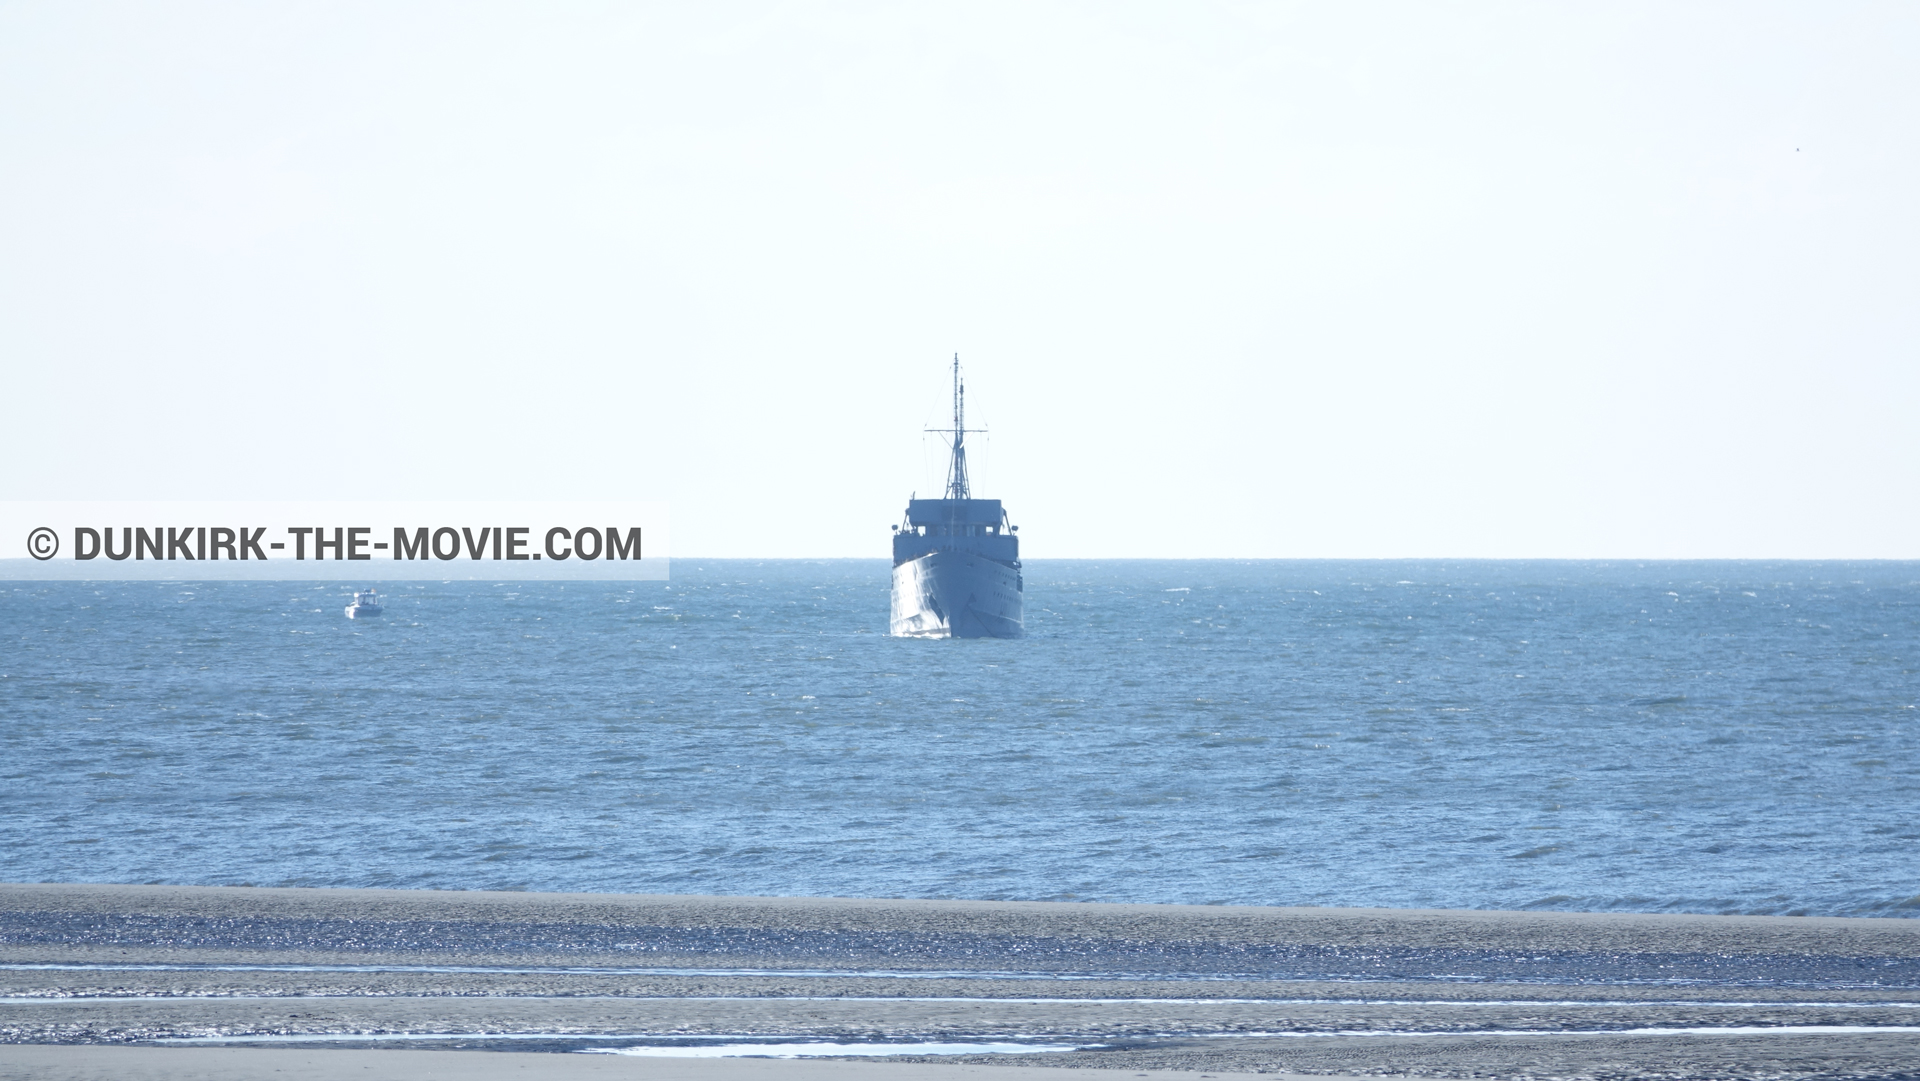 Fotos con barco,  durante el rodaje de la película Dunkerque de Nolan